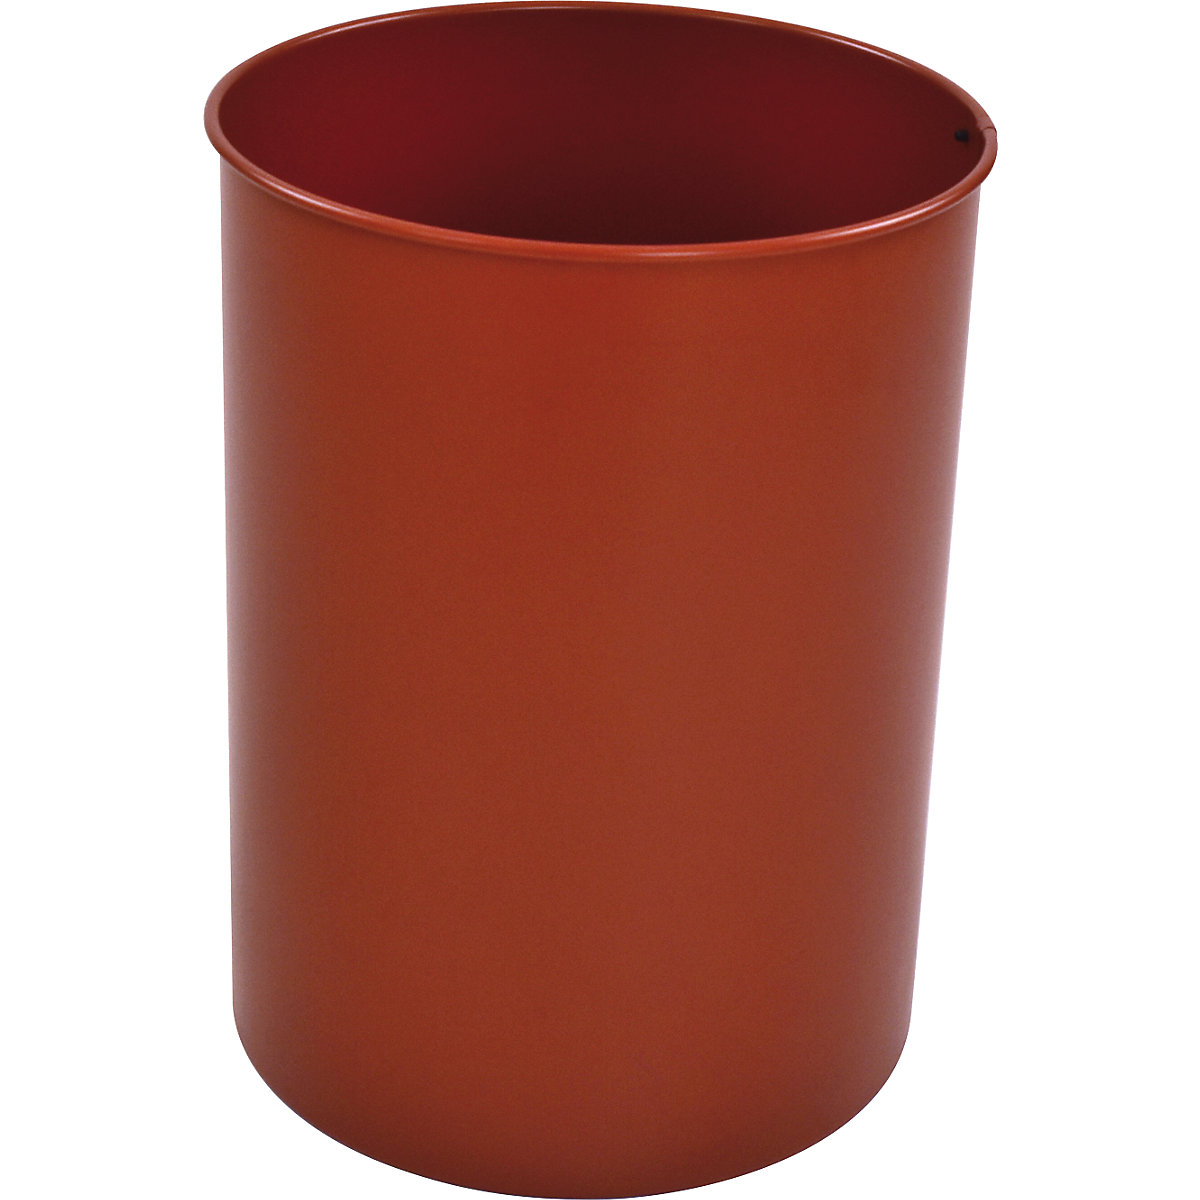 Waste paper bin, steel, round, capacity 30 l, HxØ 470 x 335 mm, red-5